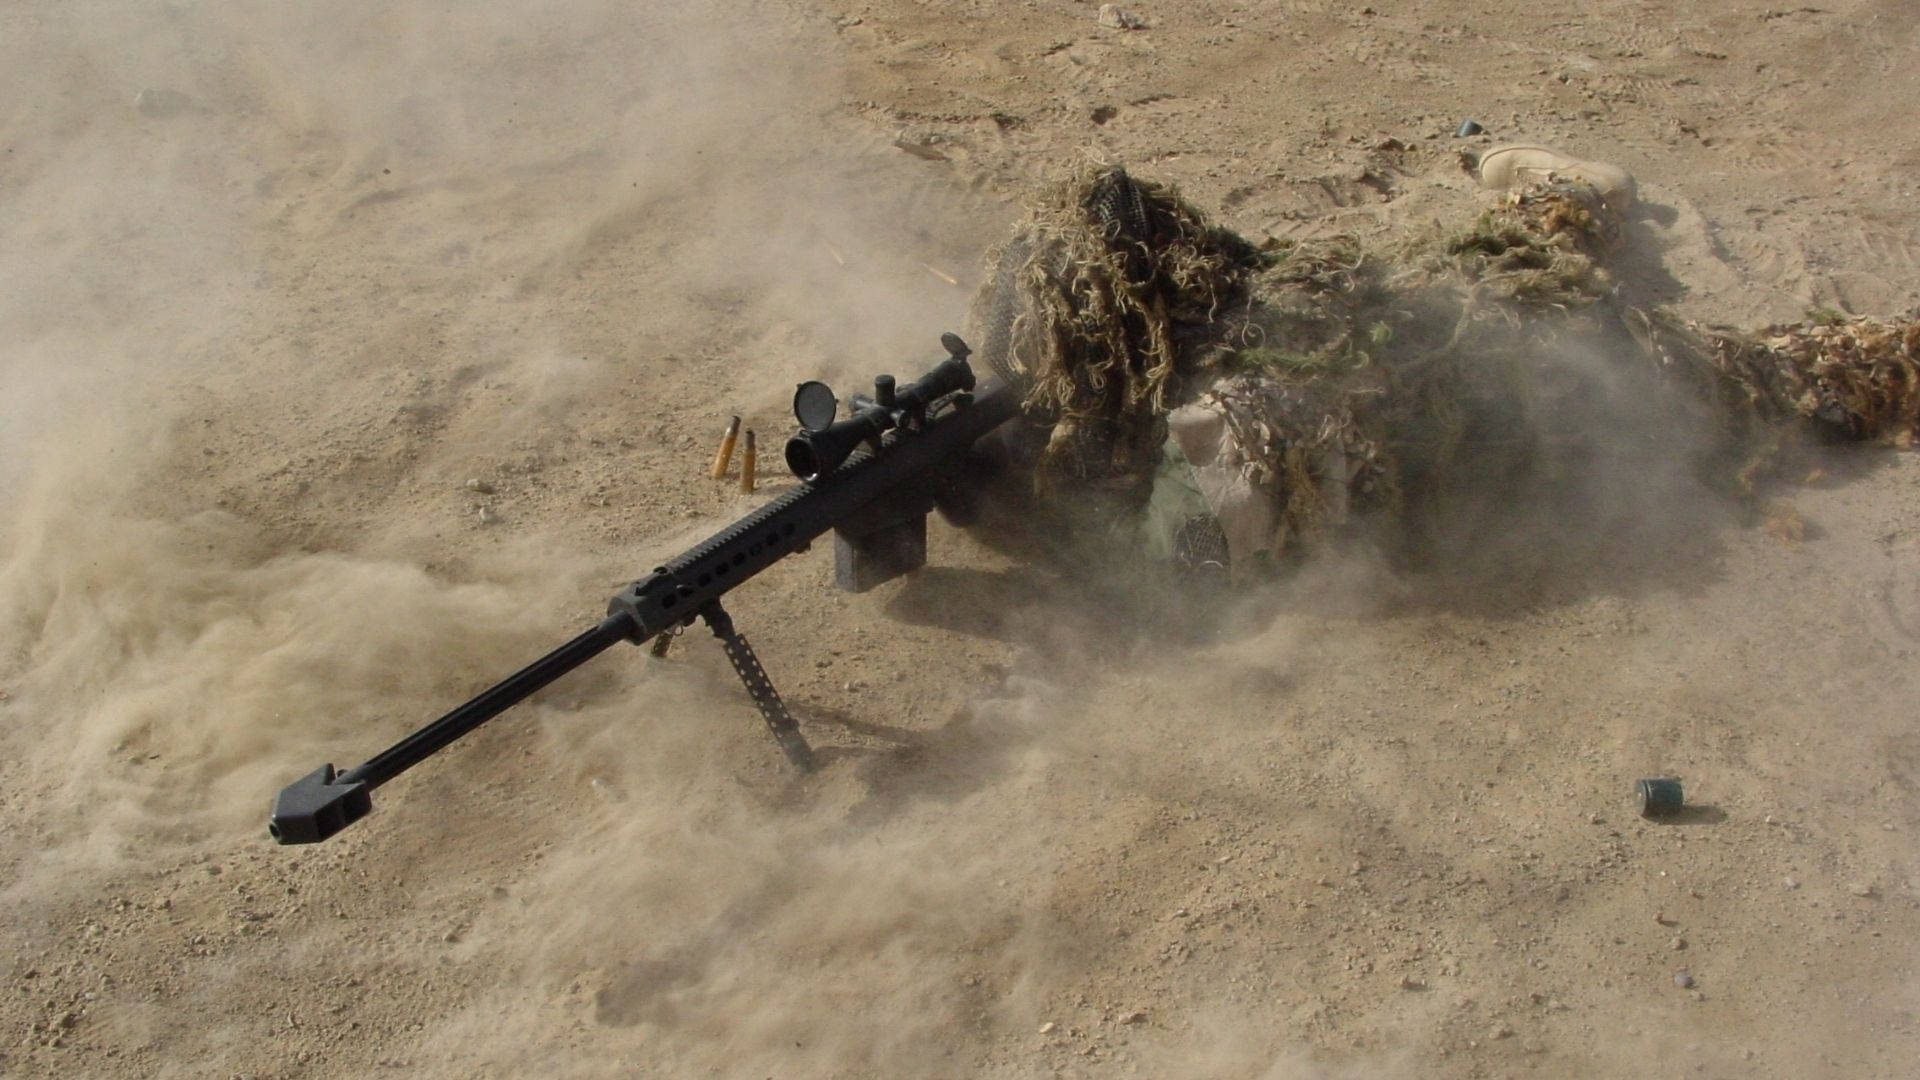 Desert Camouflage Sniper